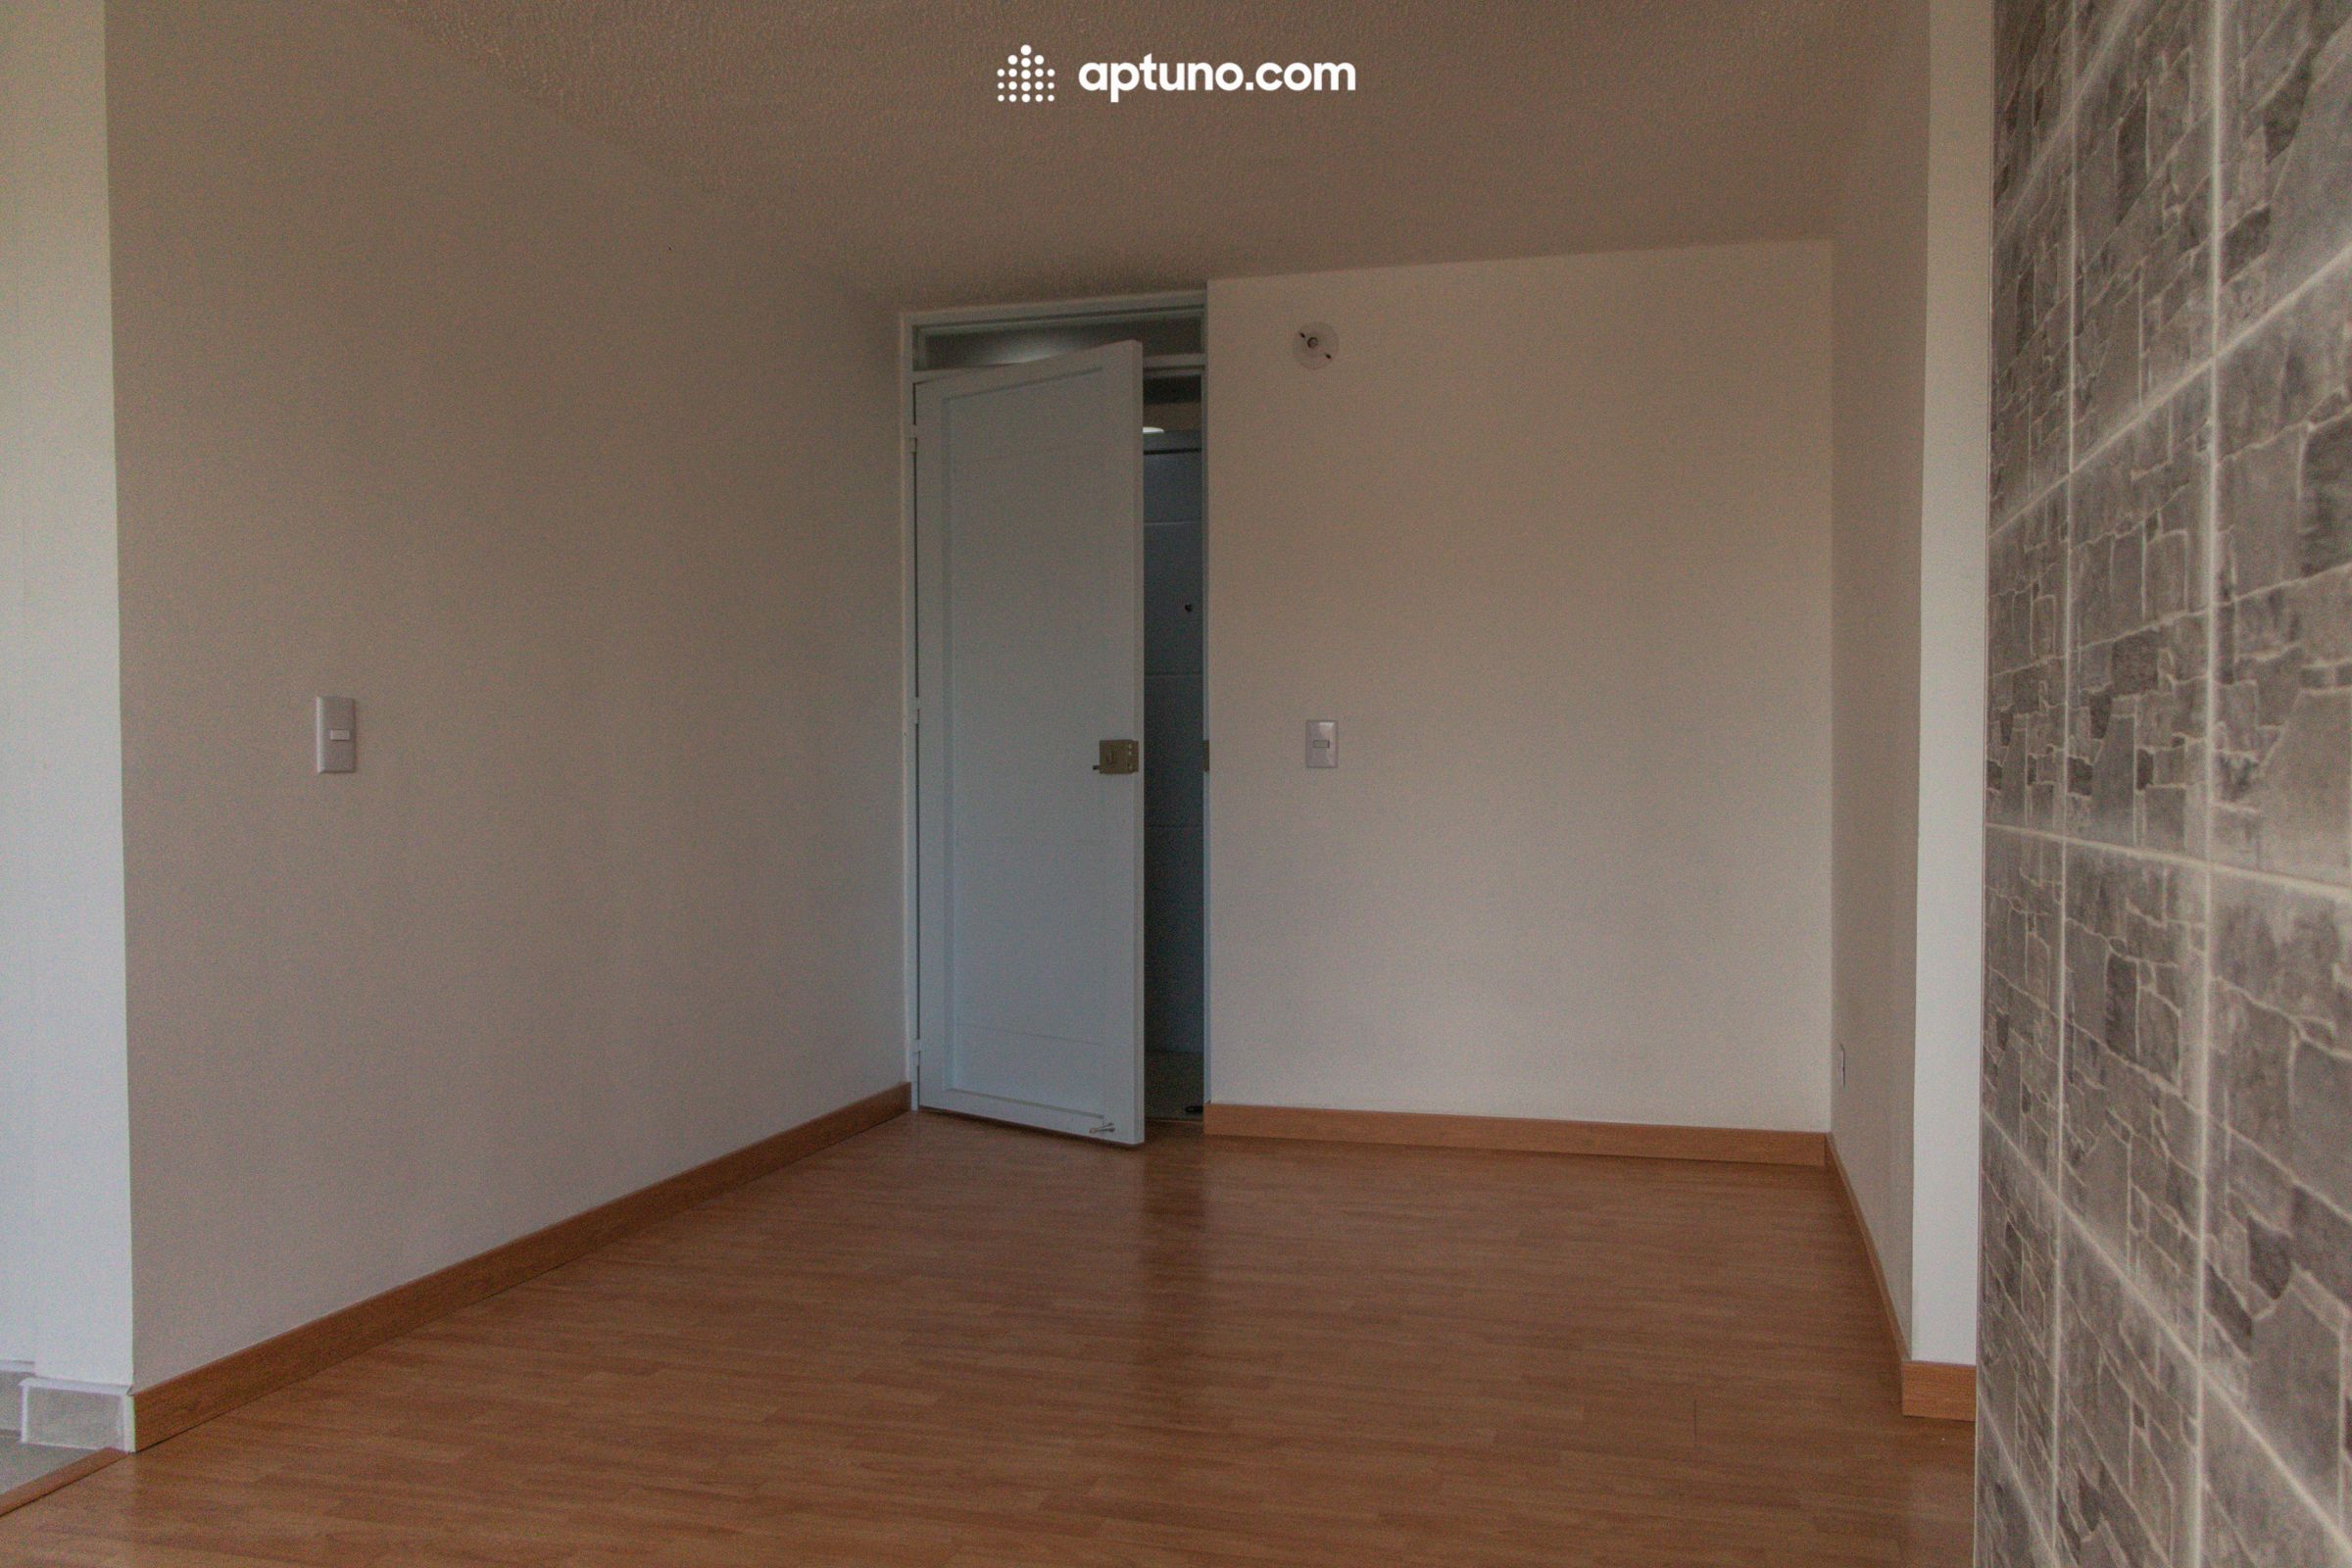 Apartamento en arriendo Rafael Escamilla 39 m² - $ 1.020.000,00